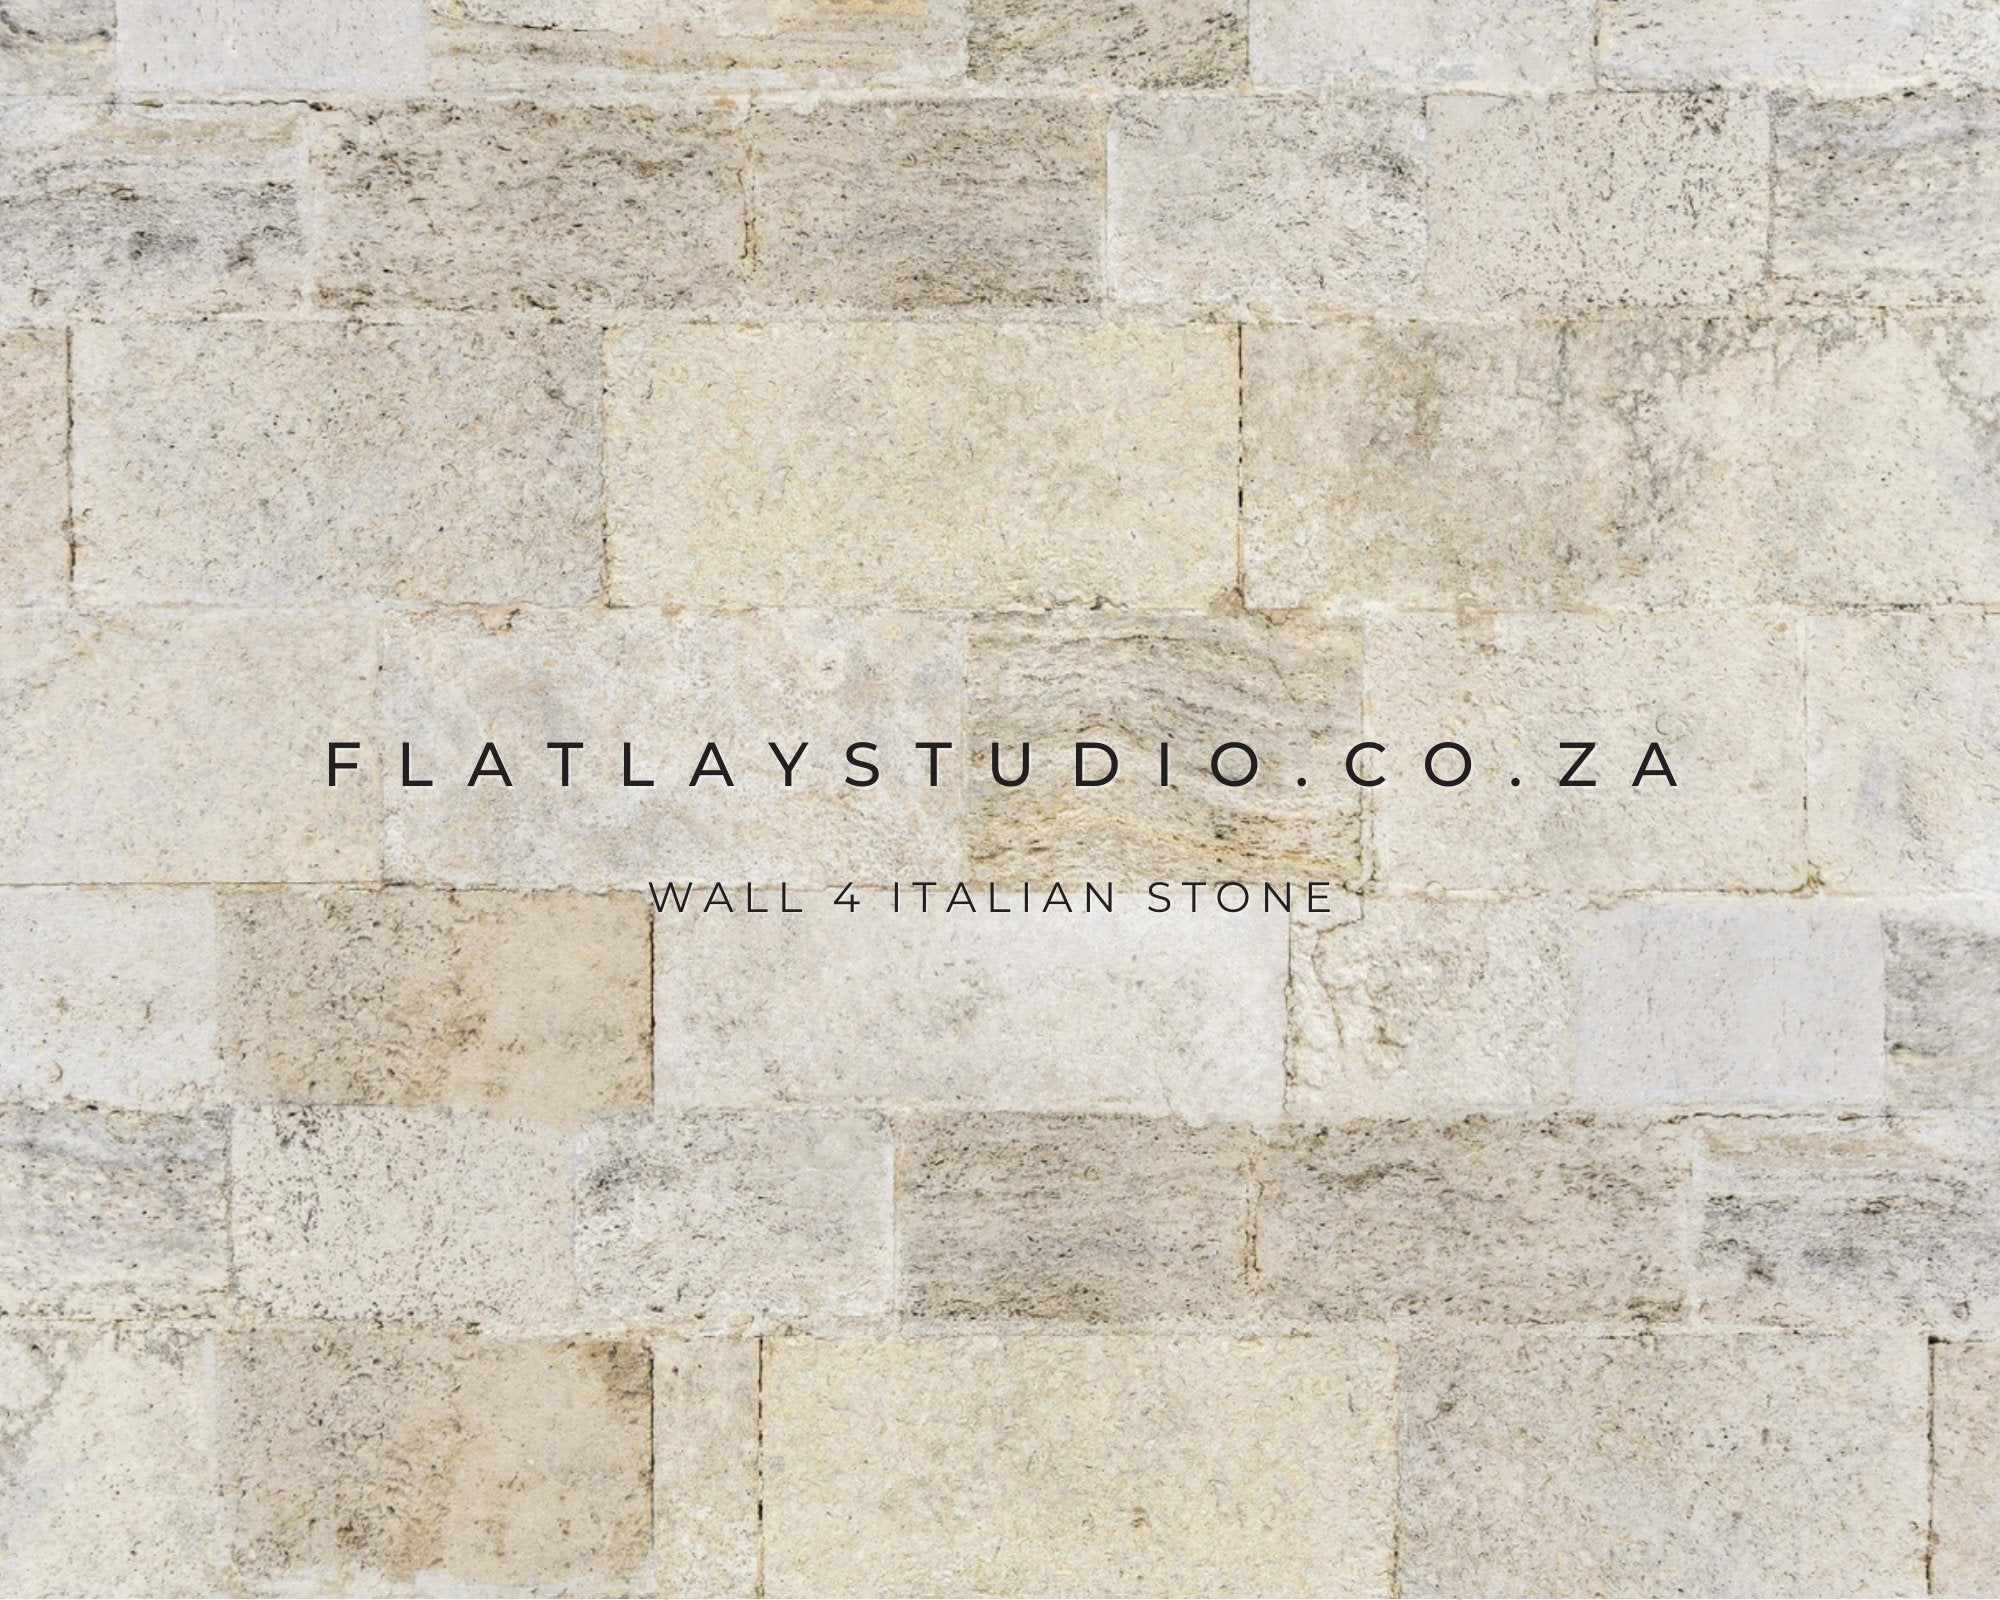 Wall 4 Italian Stone - FlatlayStudio